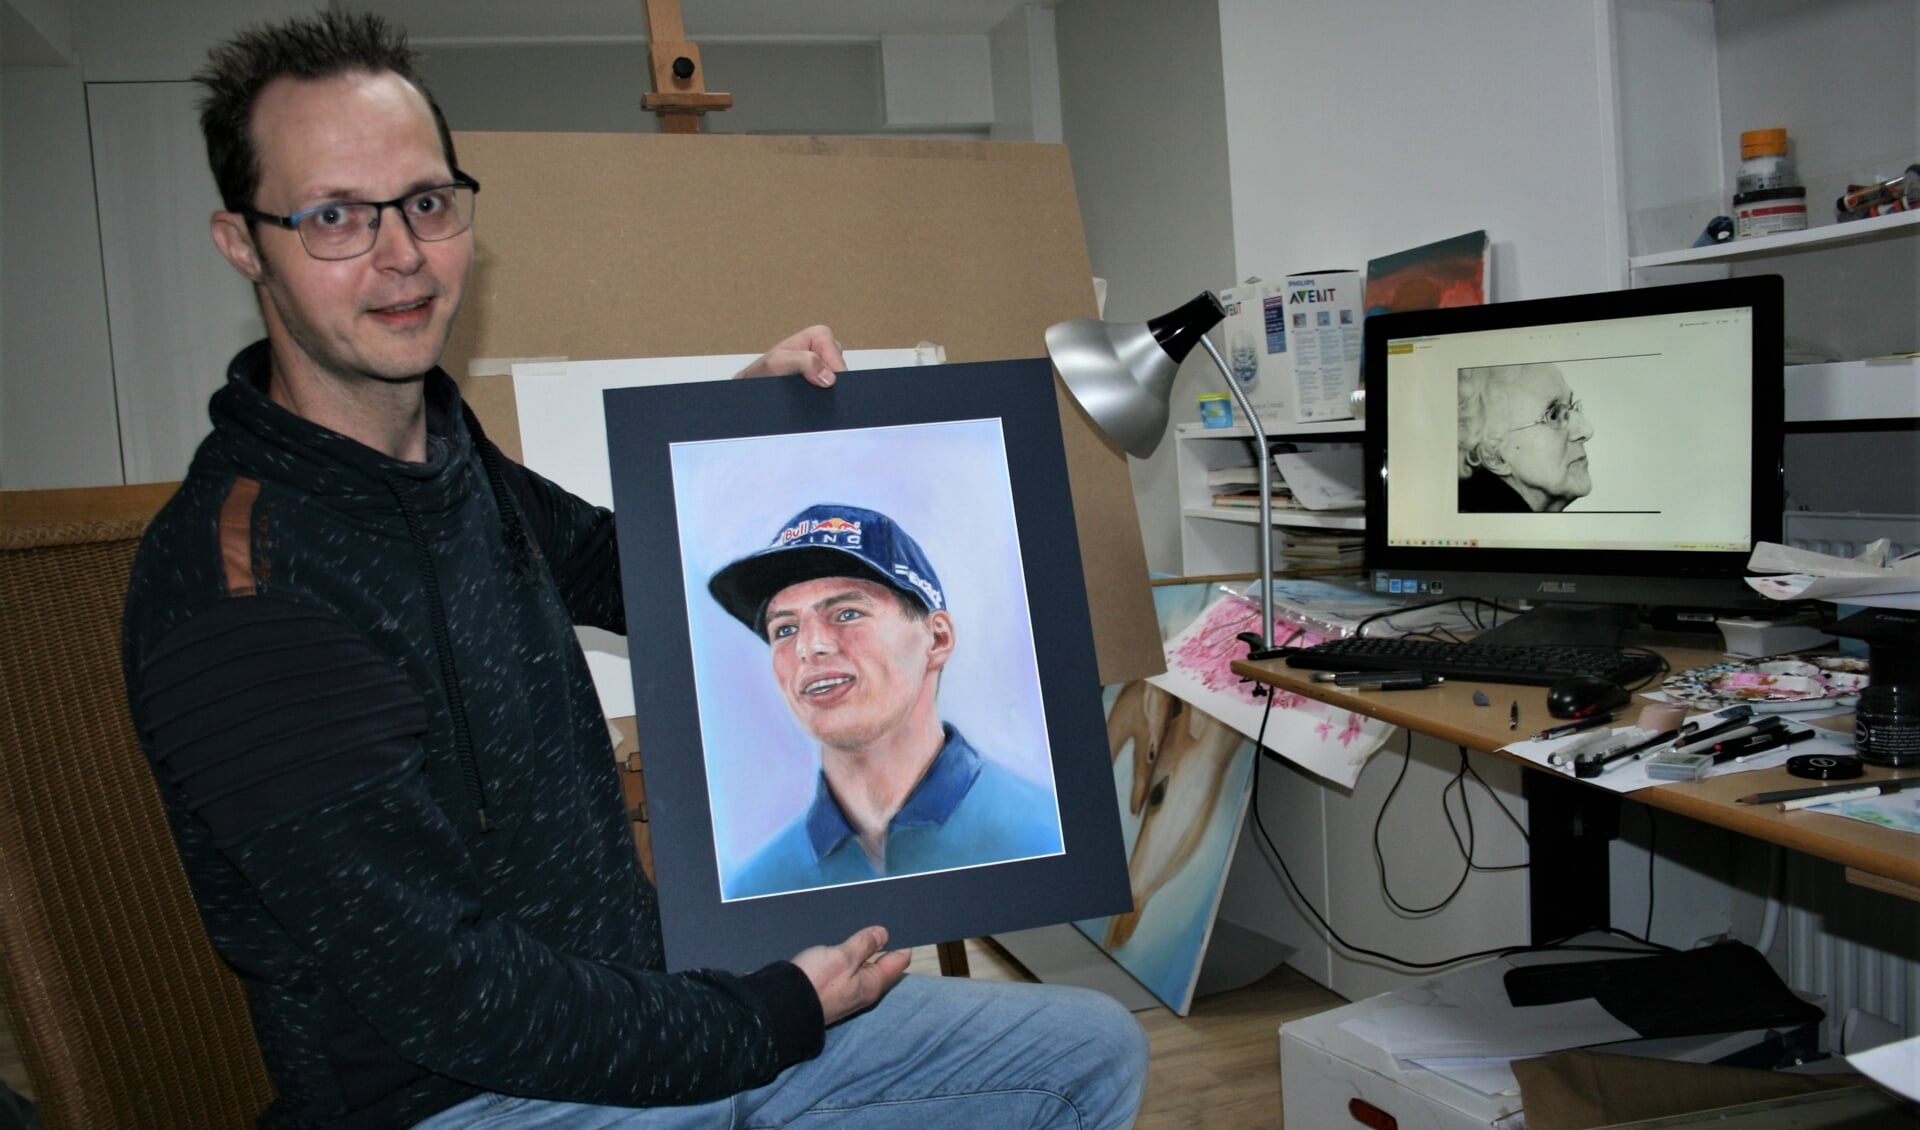 Dani tekende een mooi portret van Max Verstappen, maar heeft zelf weinig met de coureur en met autoracen.